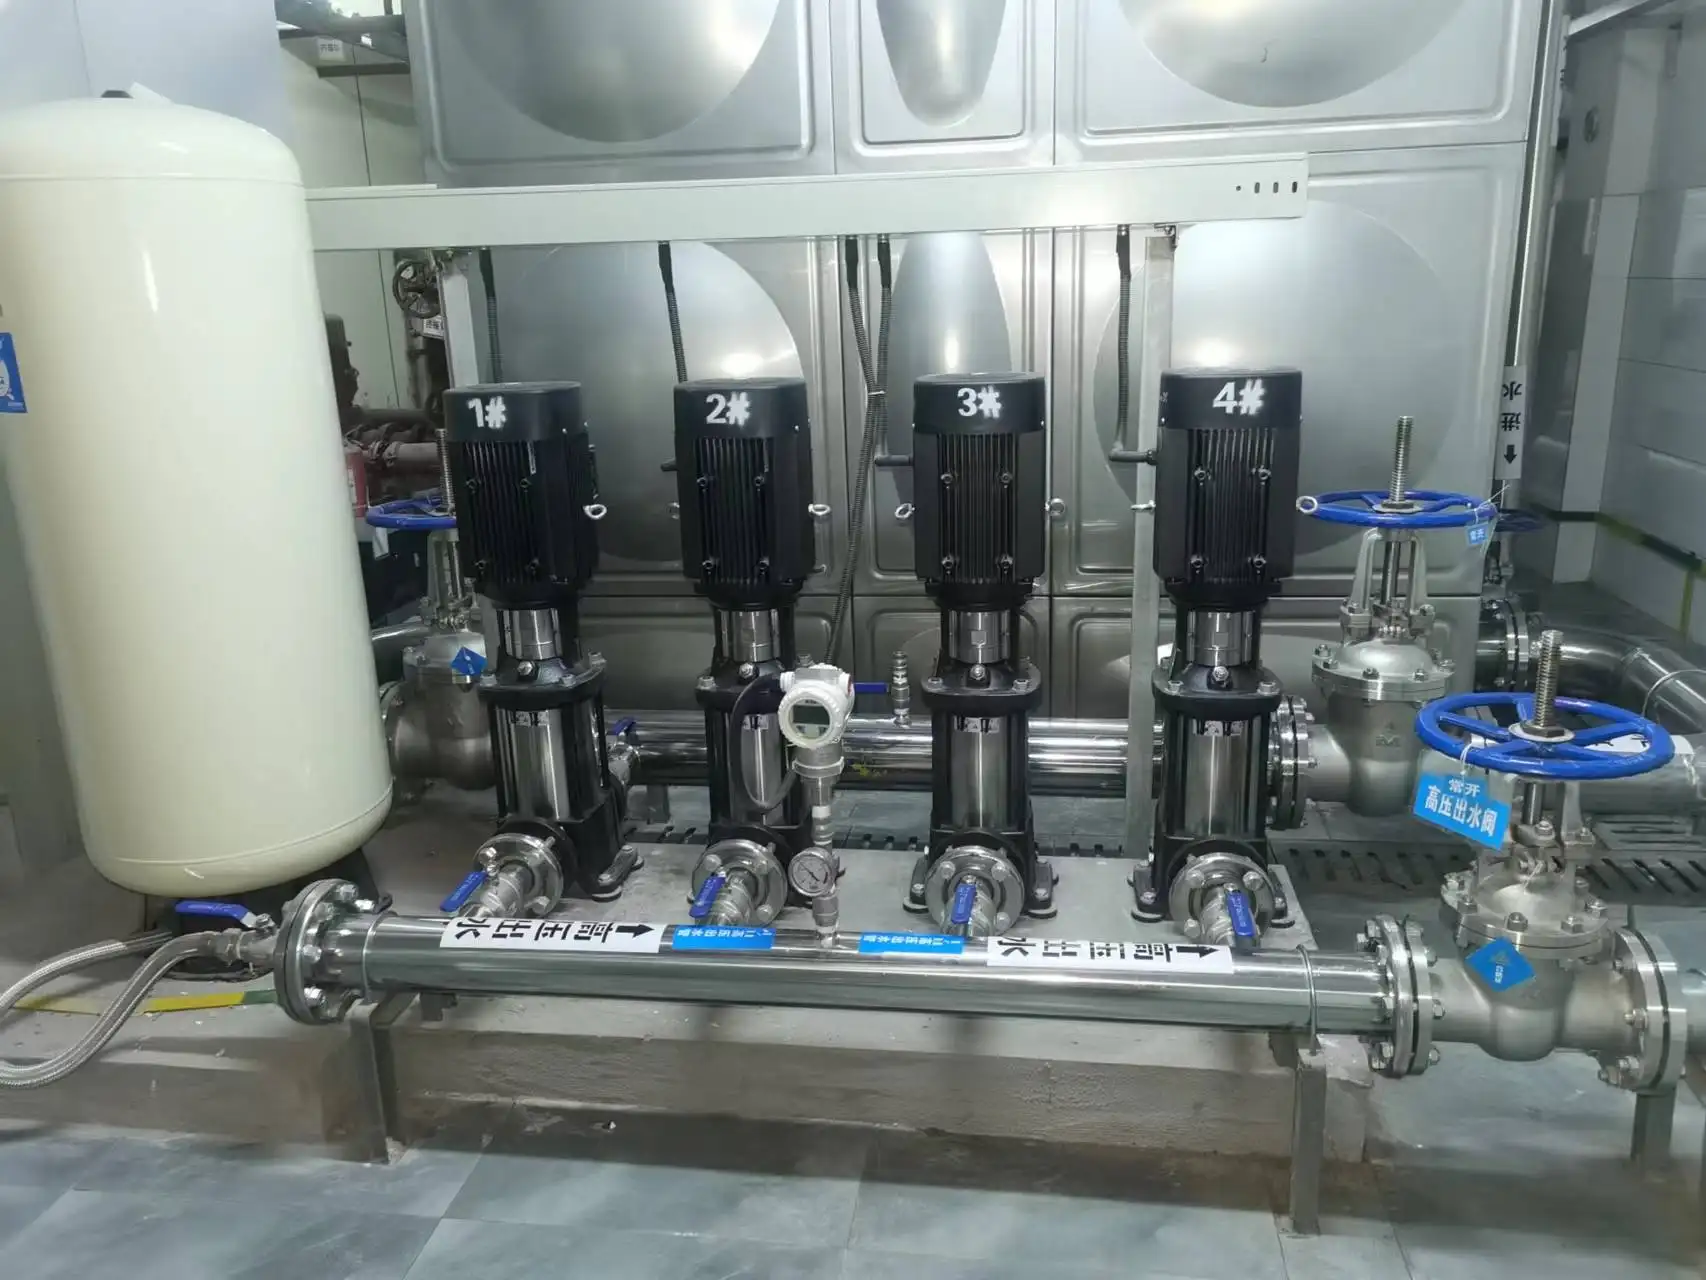 Tangki sistem pompa pendorong air konstan sentrifugal multi tahap tekanan tinggi baja tahan karat tipe ringan kualitas bagus